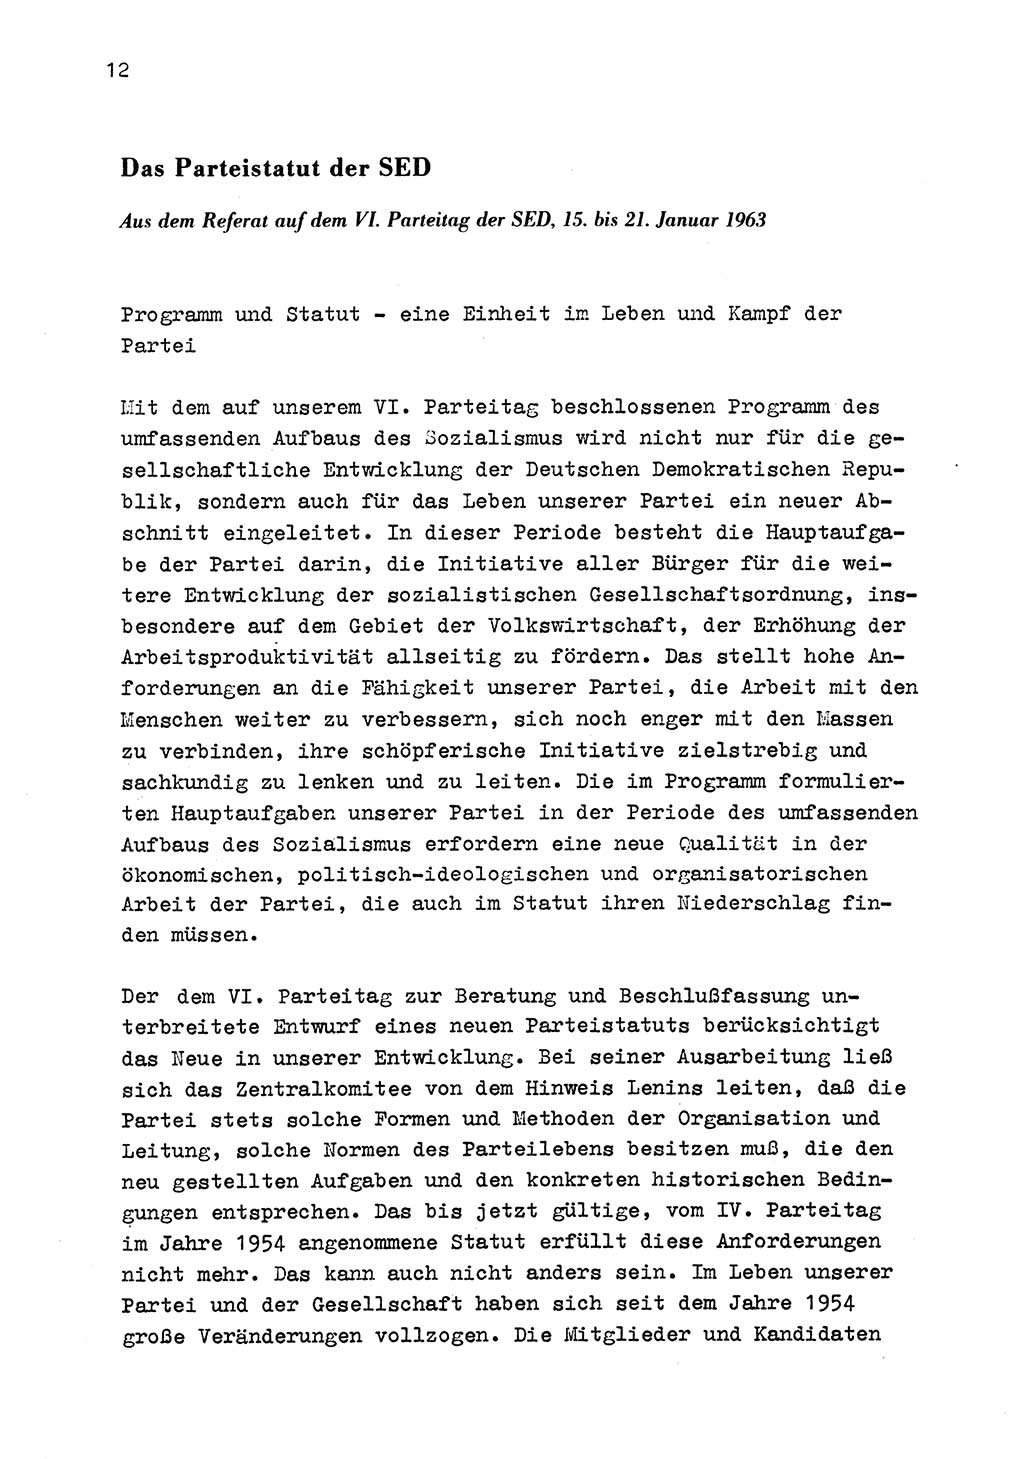 Zu Fragen der Parteiarbeit [Sozialistische Einheitspartei Deutschlands (SED) Deutsche Demokratische Republik (DDR)] 1979, Seite 12 (Fr. PA SED DDR 1979, S. 12)